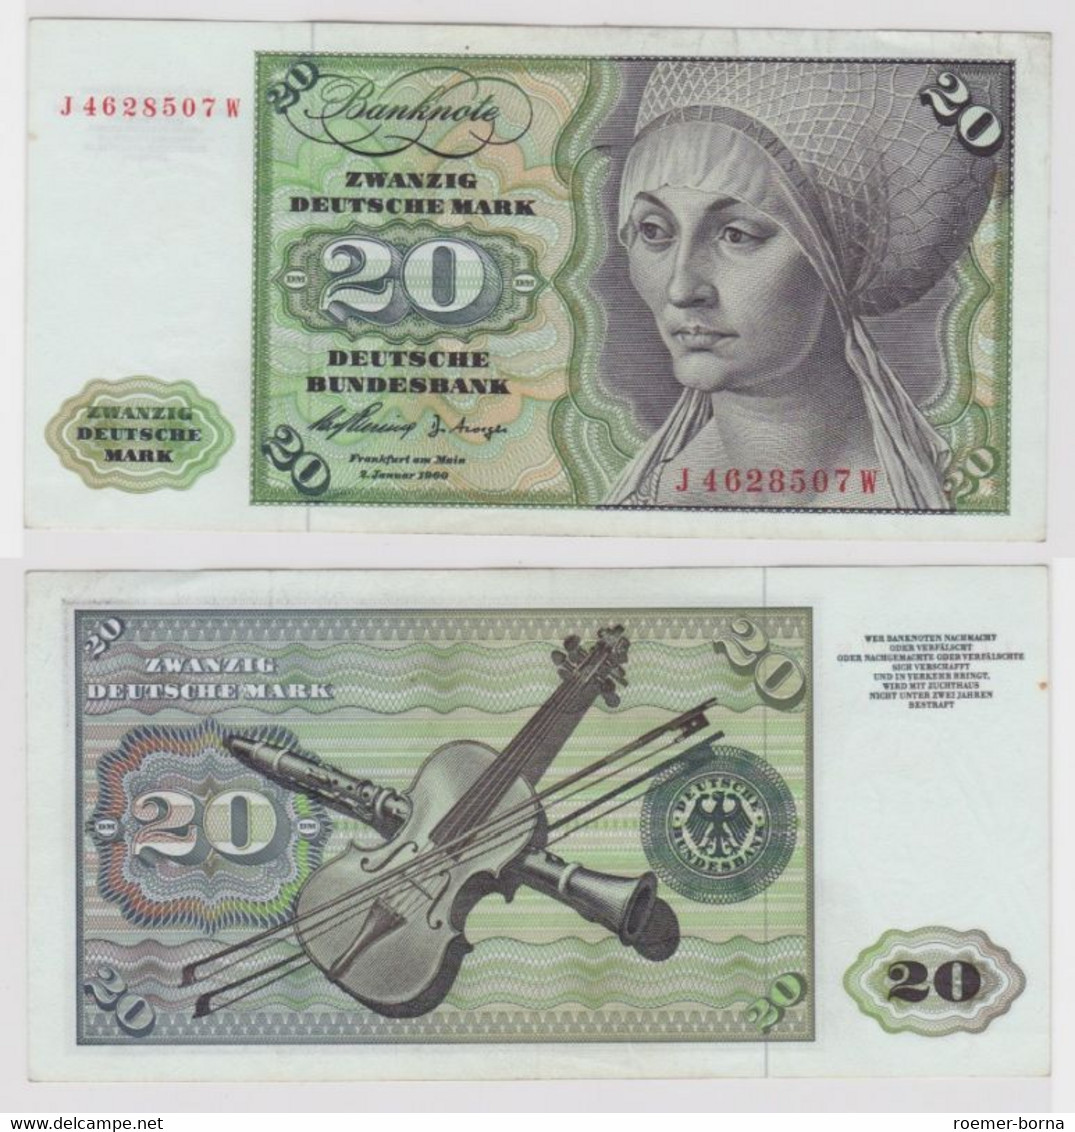 T144658 Banknote 20 DM Deutsche Mark Ro. 264c Schein 2.Jan. 1960 KN J 4628507 W - 20 Deutsche Mark